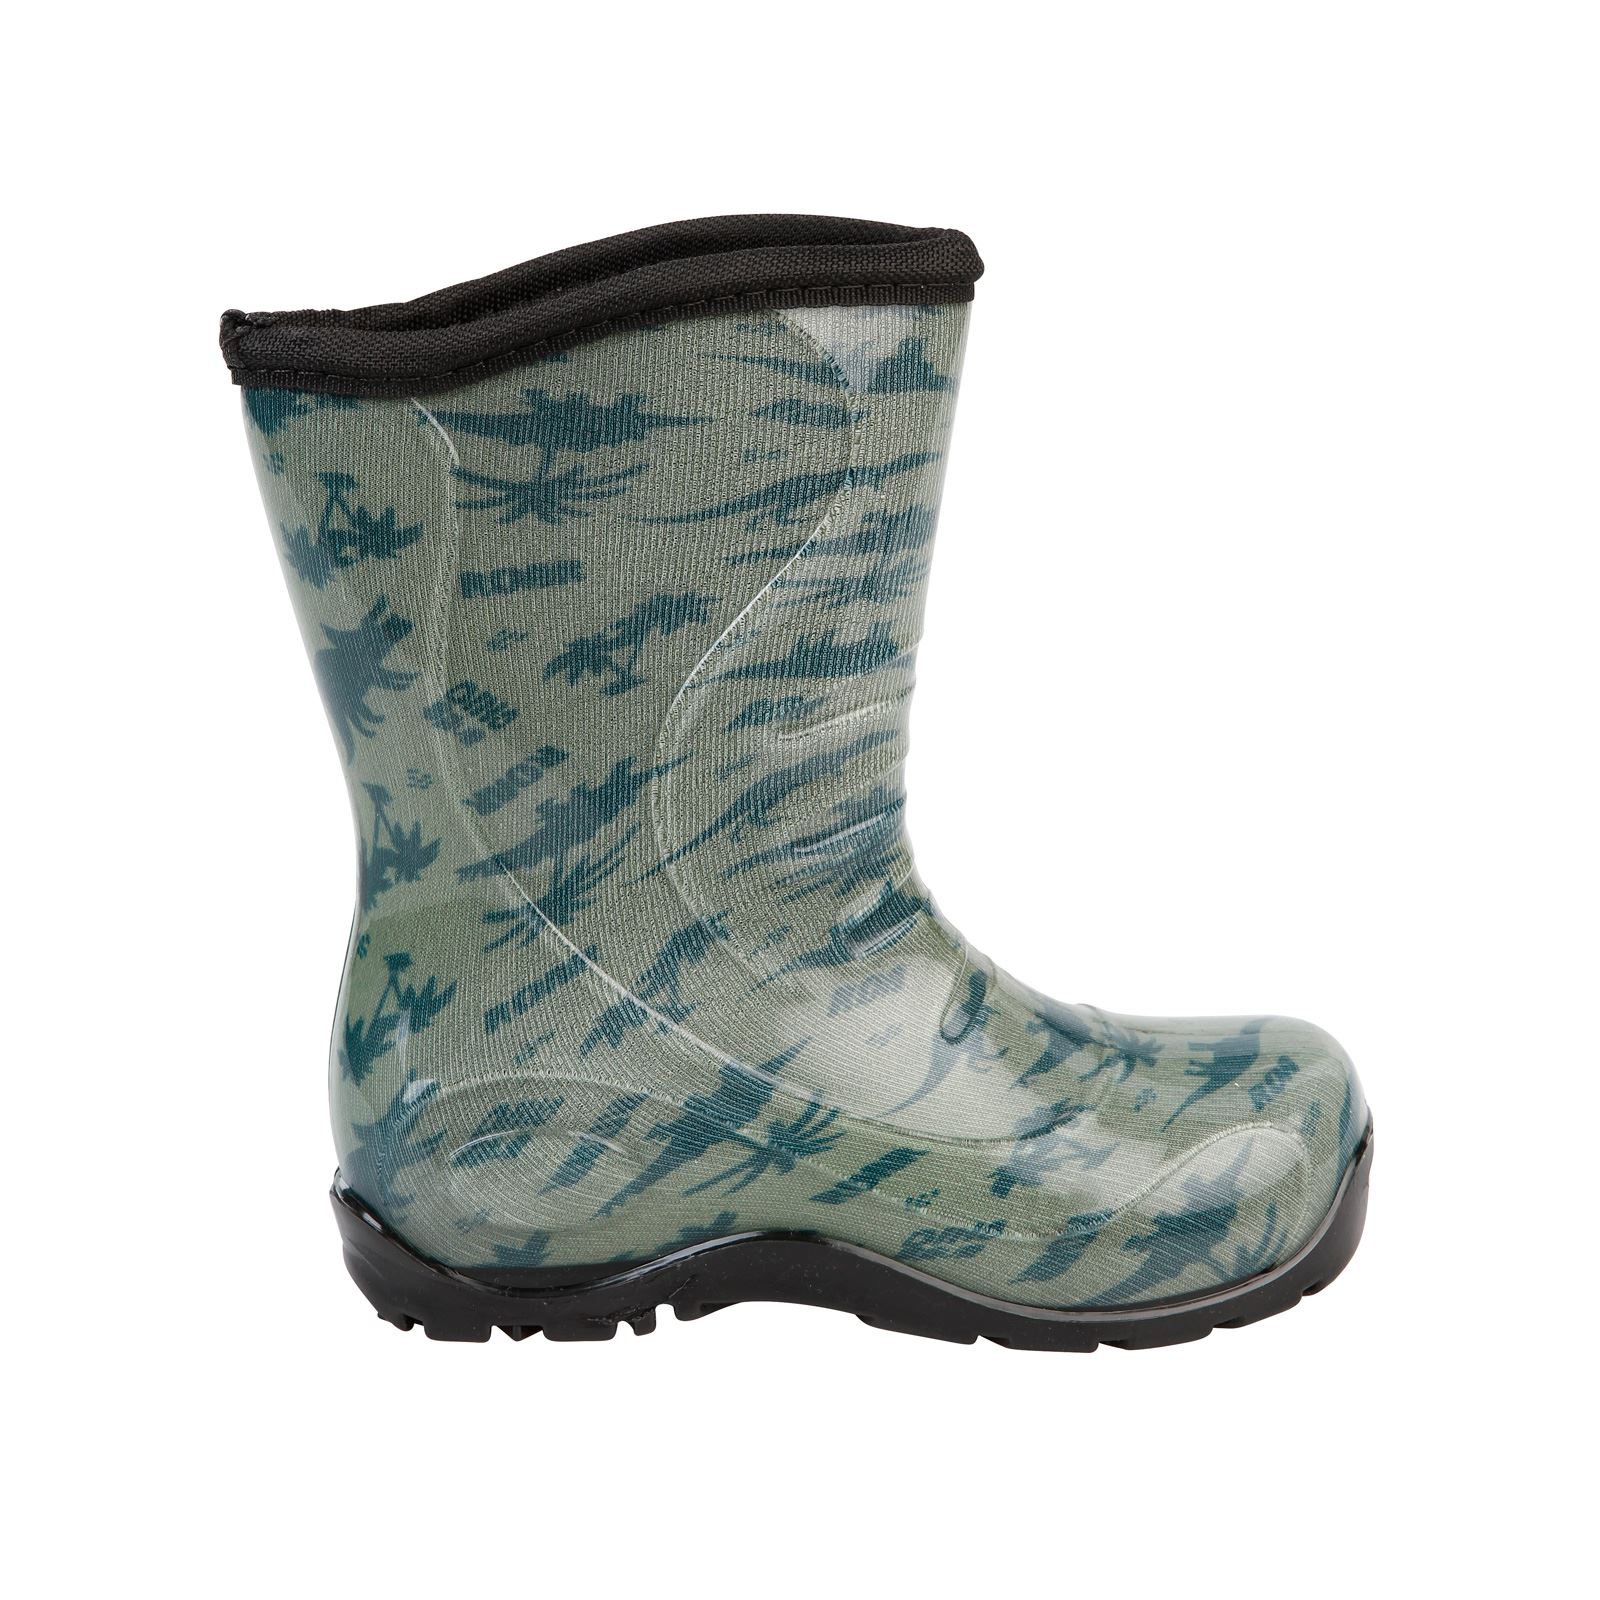 Boots Erkek Çocuk Dinazor Desenli Yağmur Çizmesi 30-34 Numara Haki